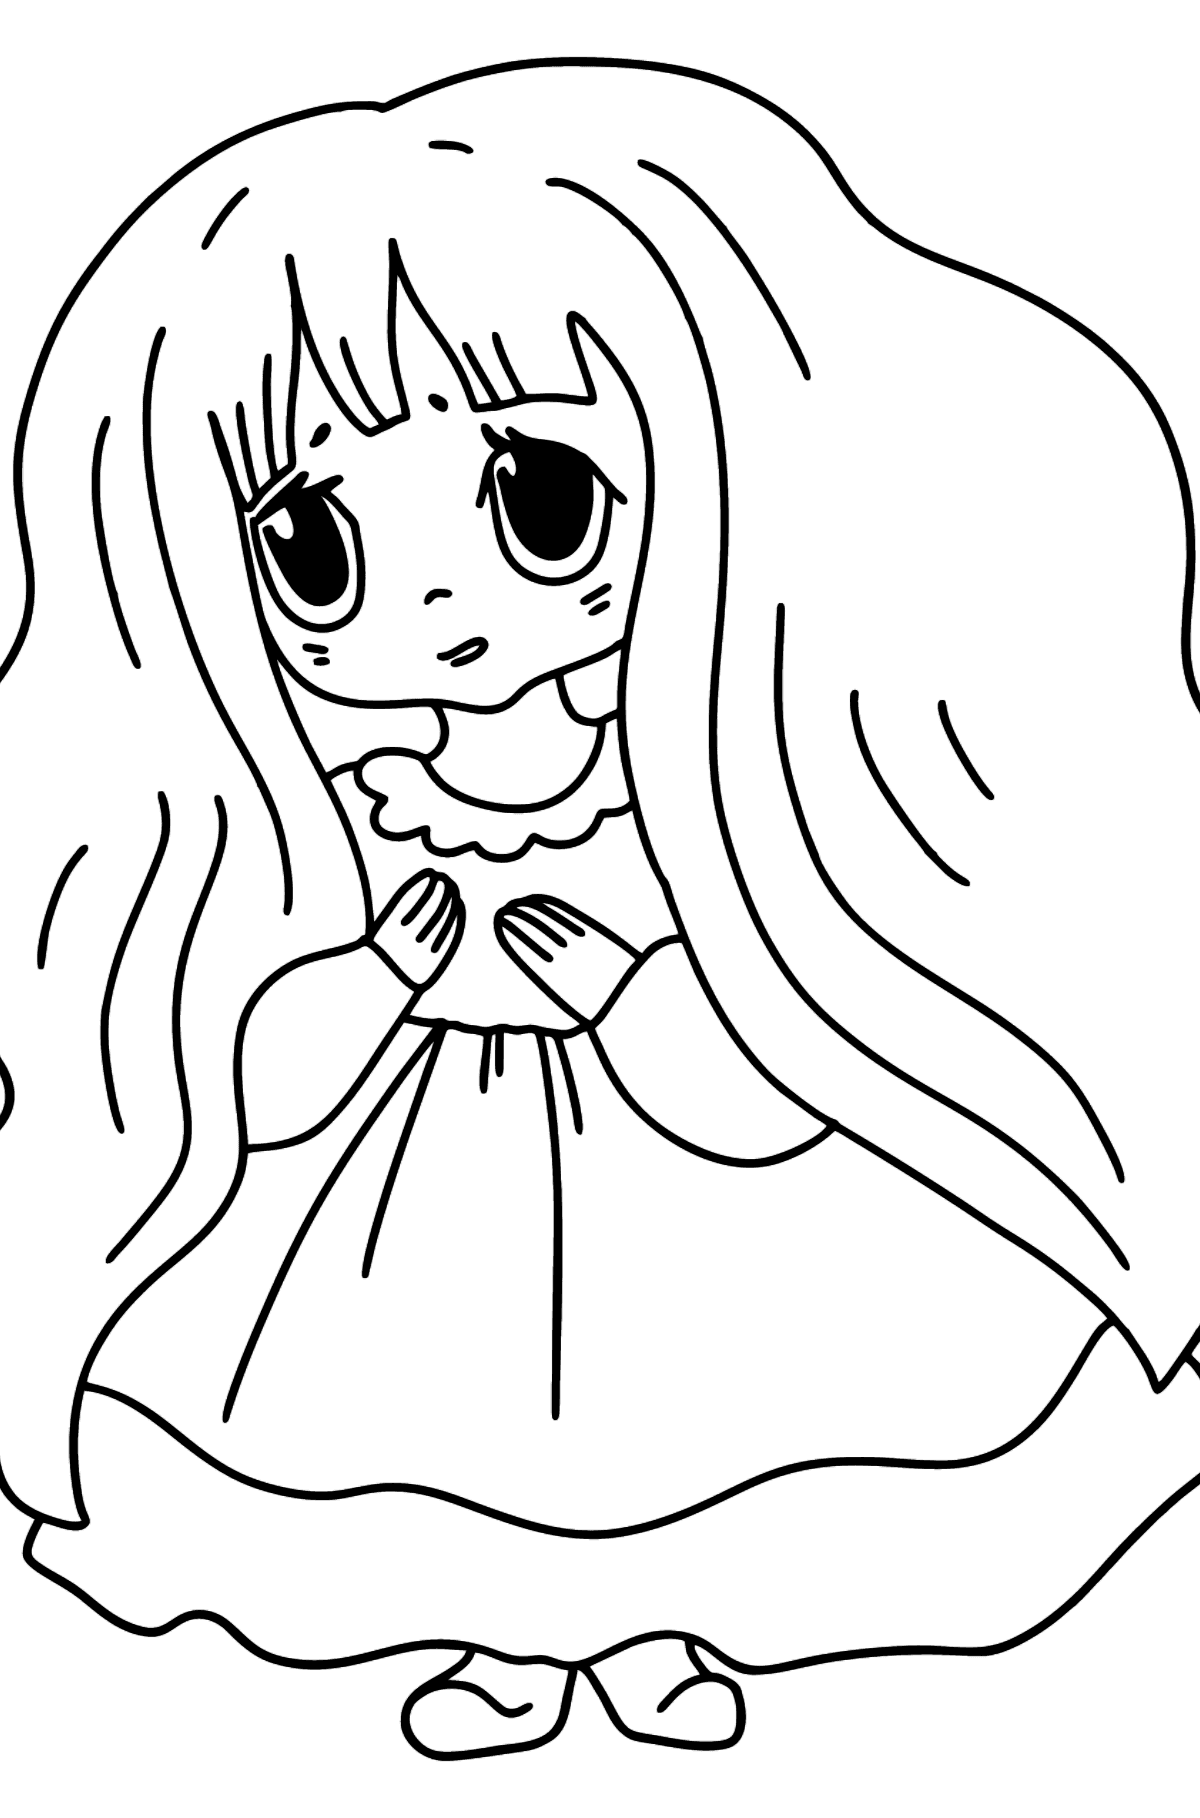 Anime trist pige tegning til farvning - Tegninger til farvelægning for børn